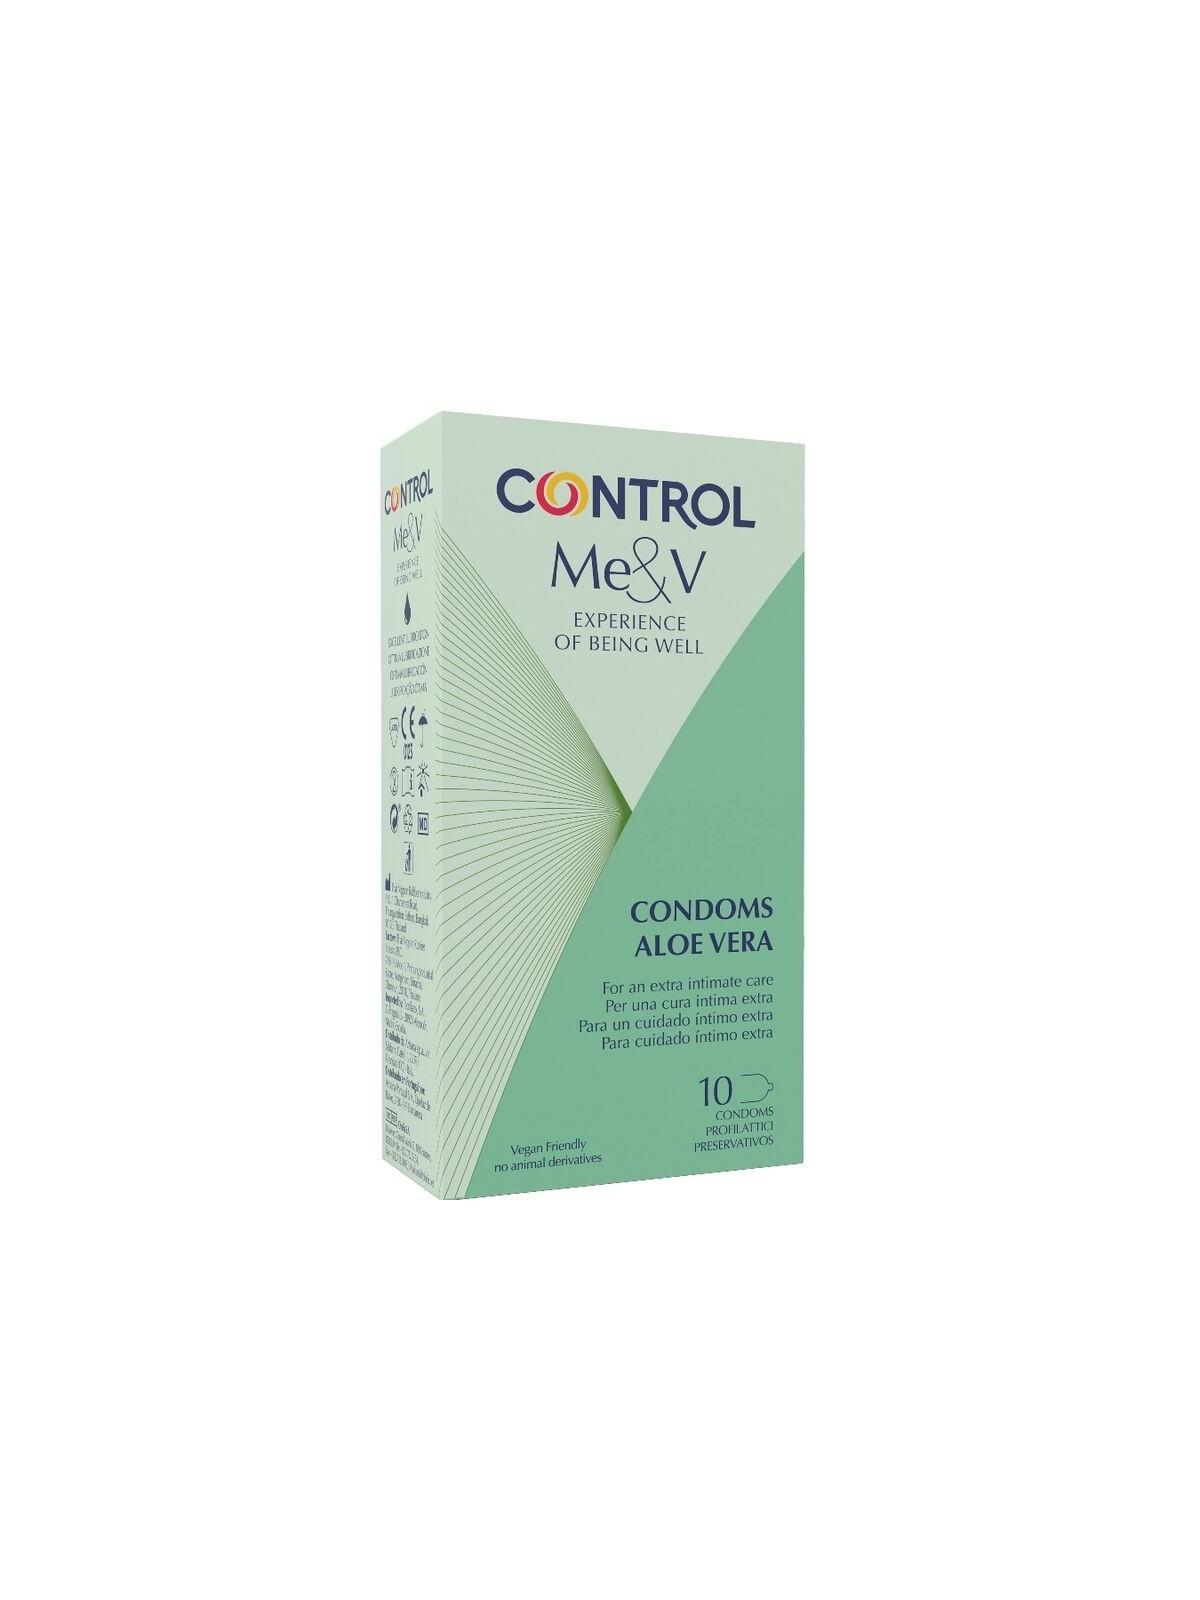 Control Preservativos Con Aloe Vera 10 uds - Comprar Condones especiales Control - Preservativos especiales (1)